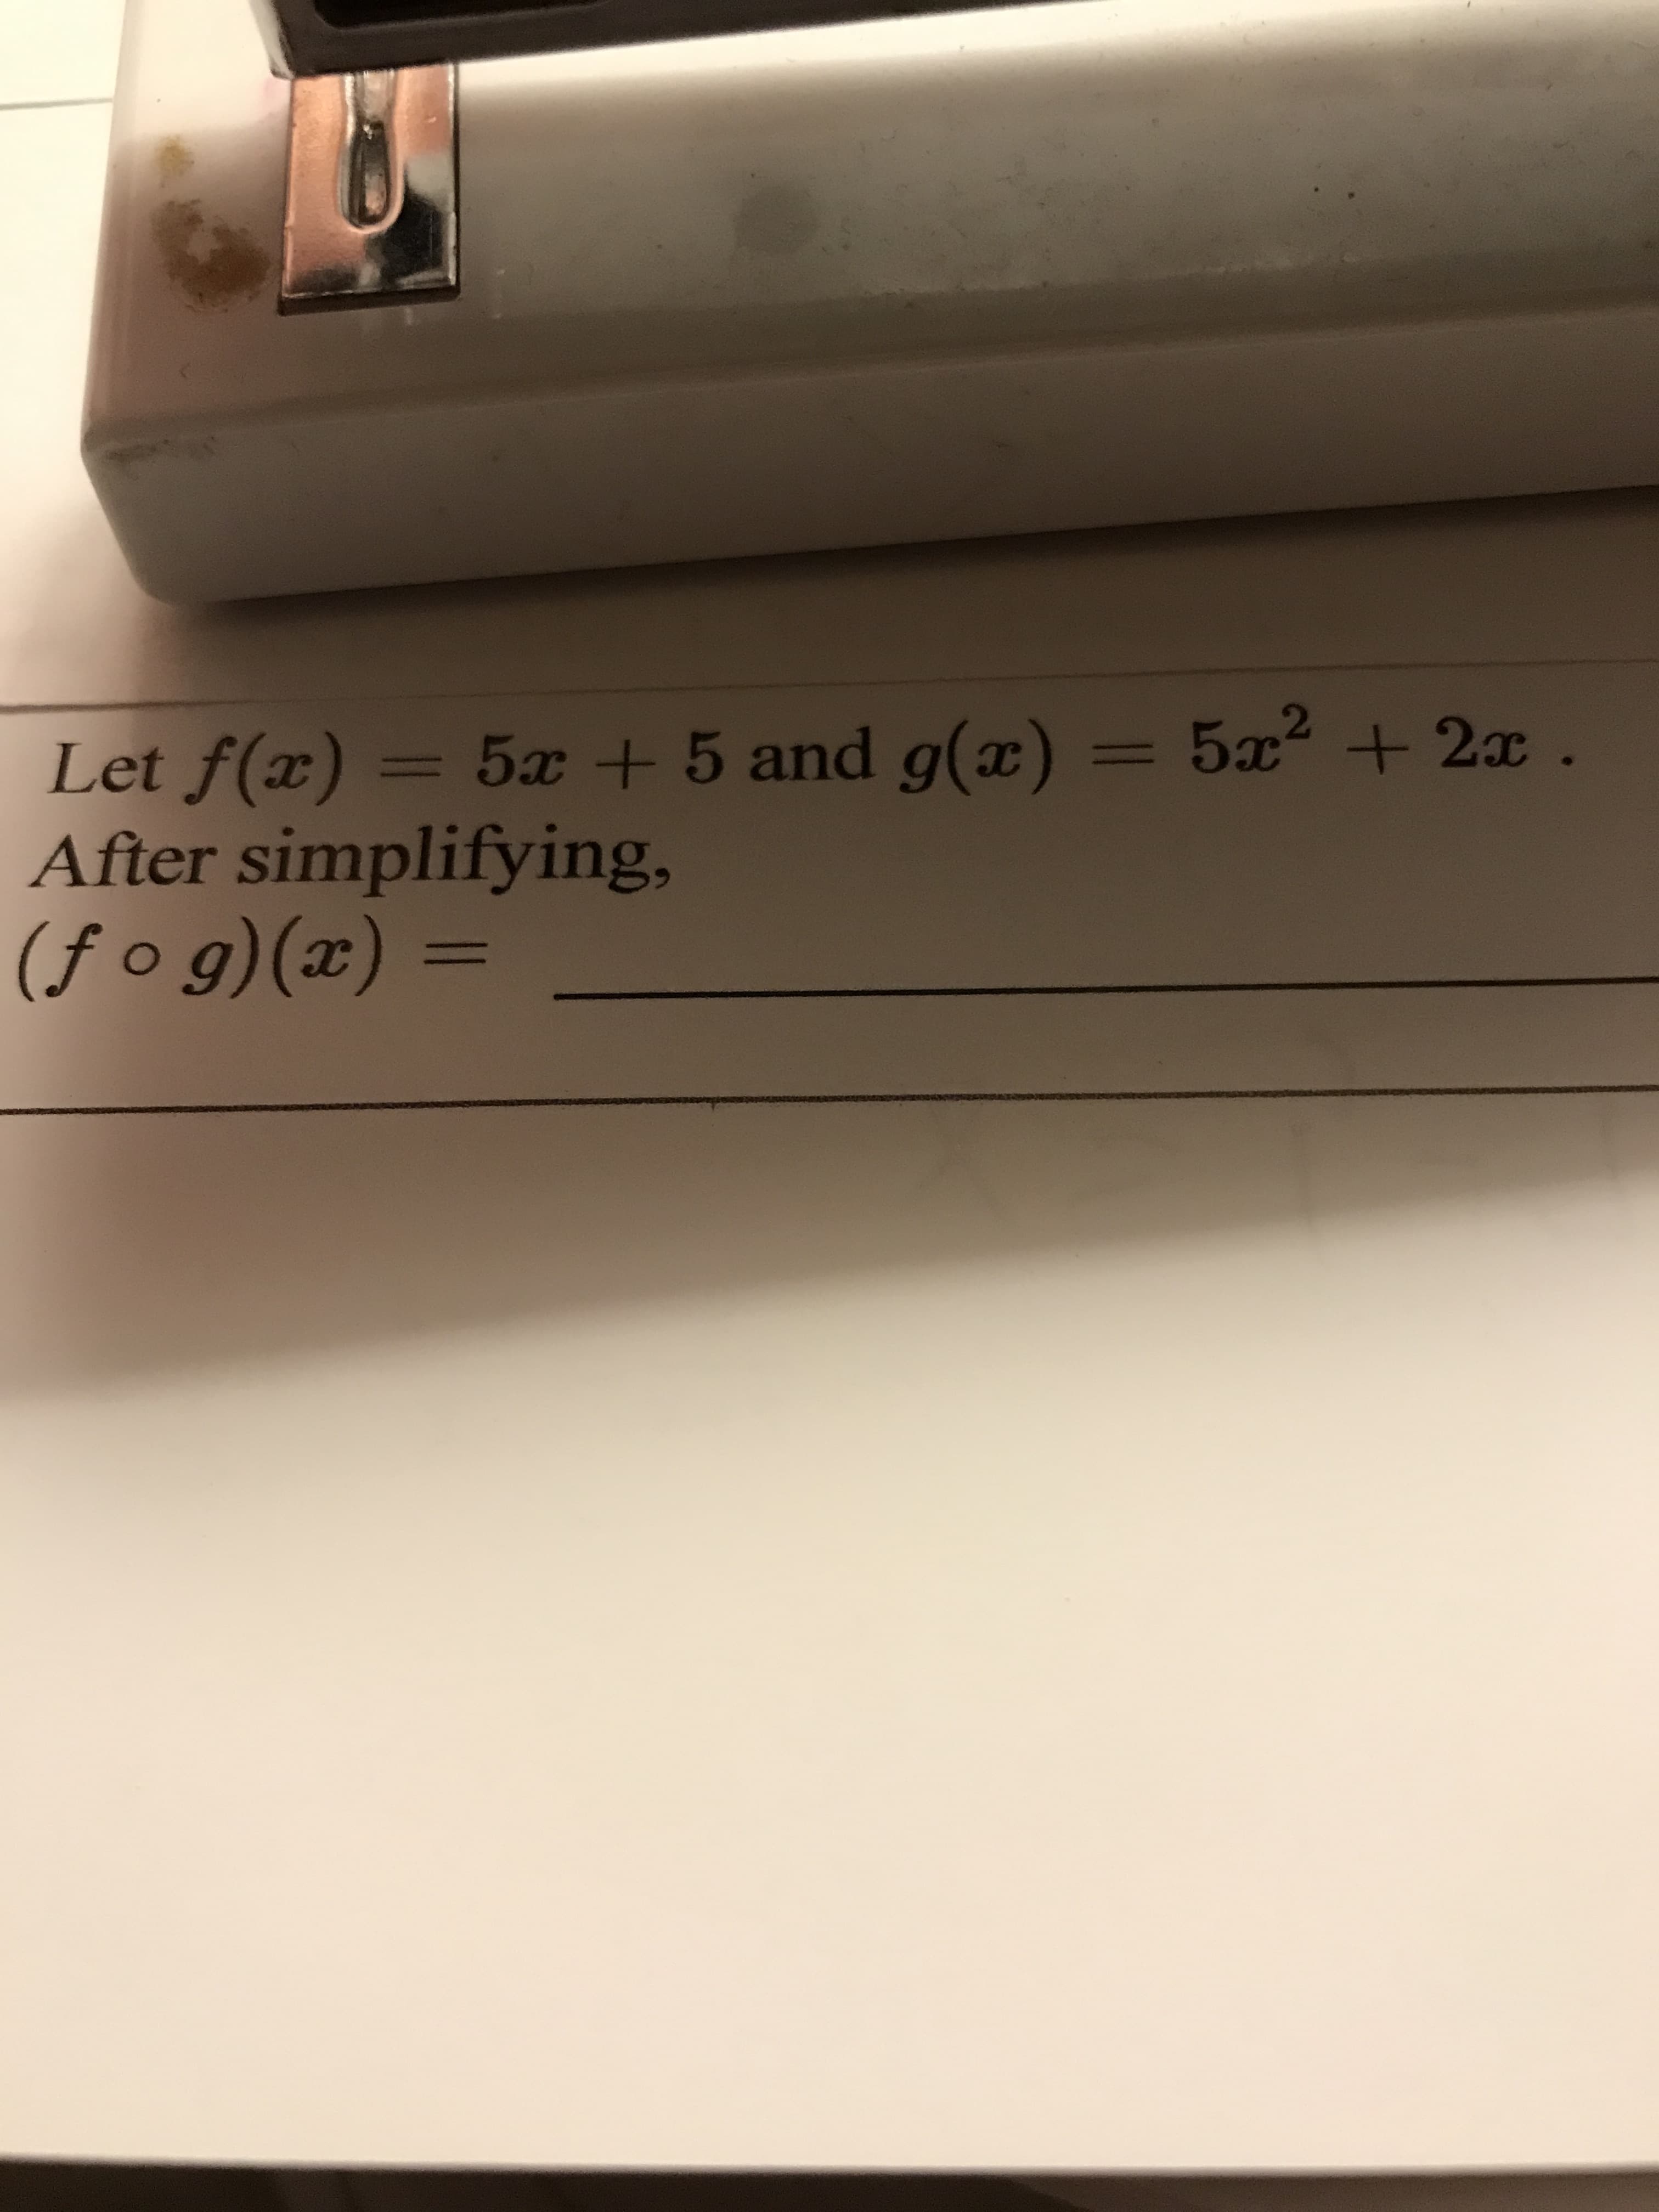 Let f(x) = = 5x2 + 2x.
After simplifying,
(f o g)(x) =
5x +5 and g(x)
%3D
